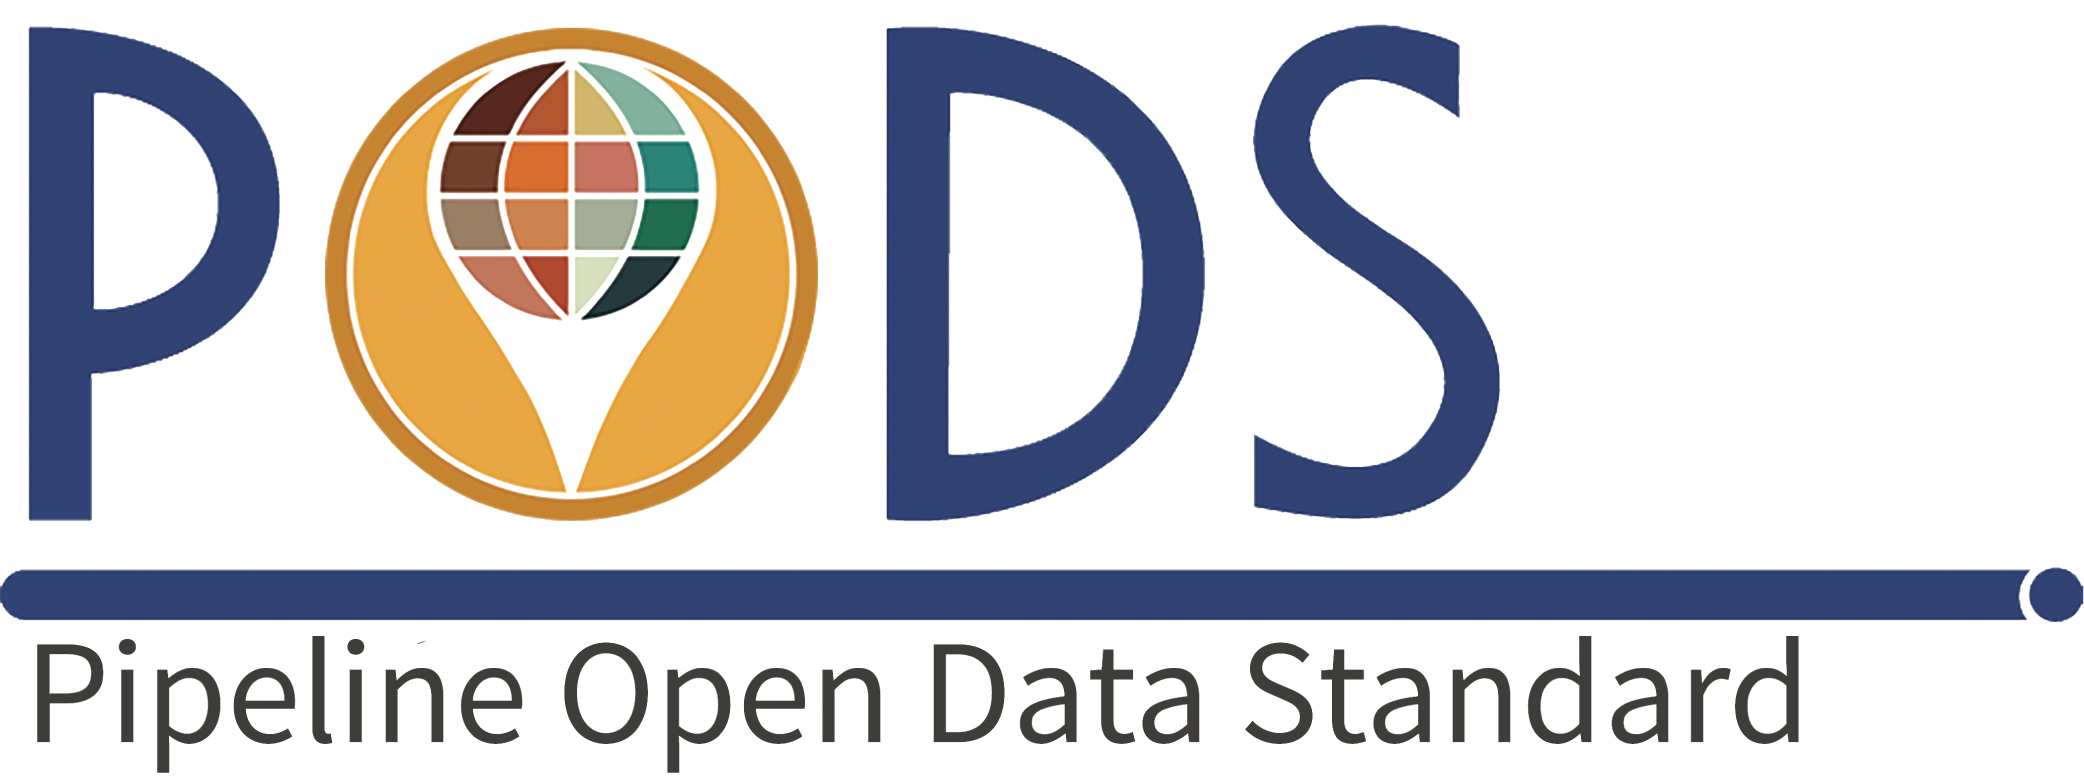 Pipeline Open Data Standard